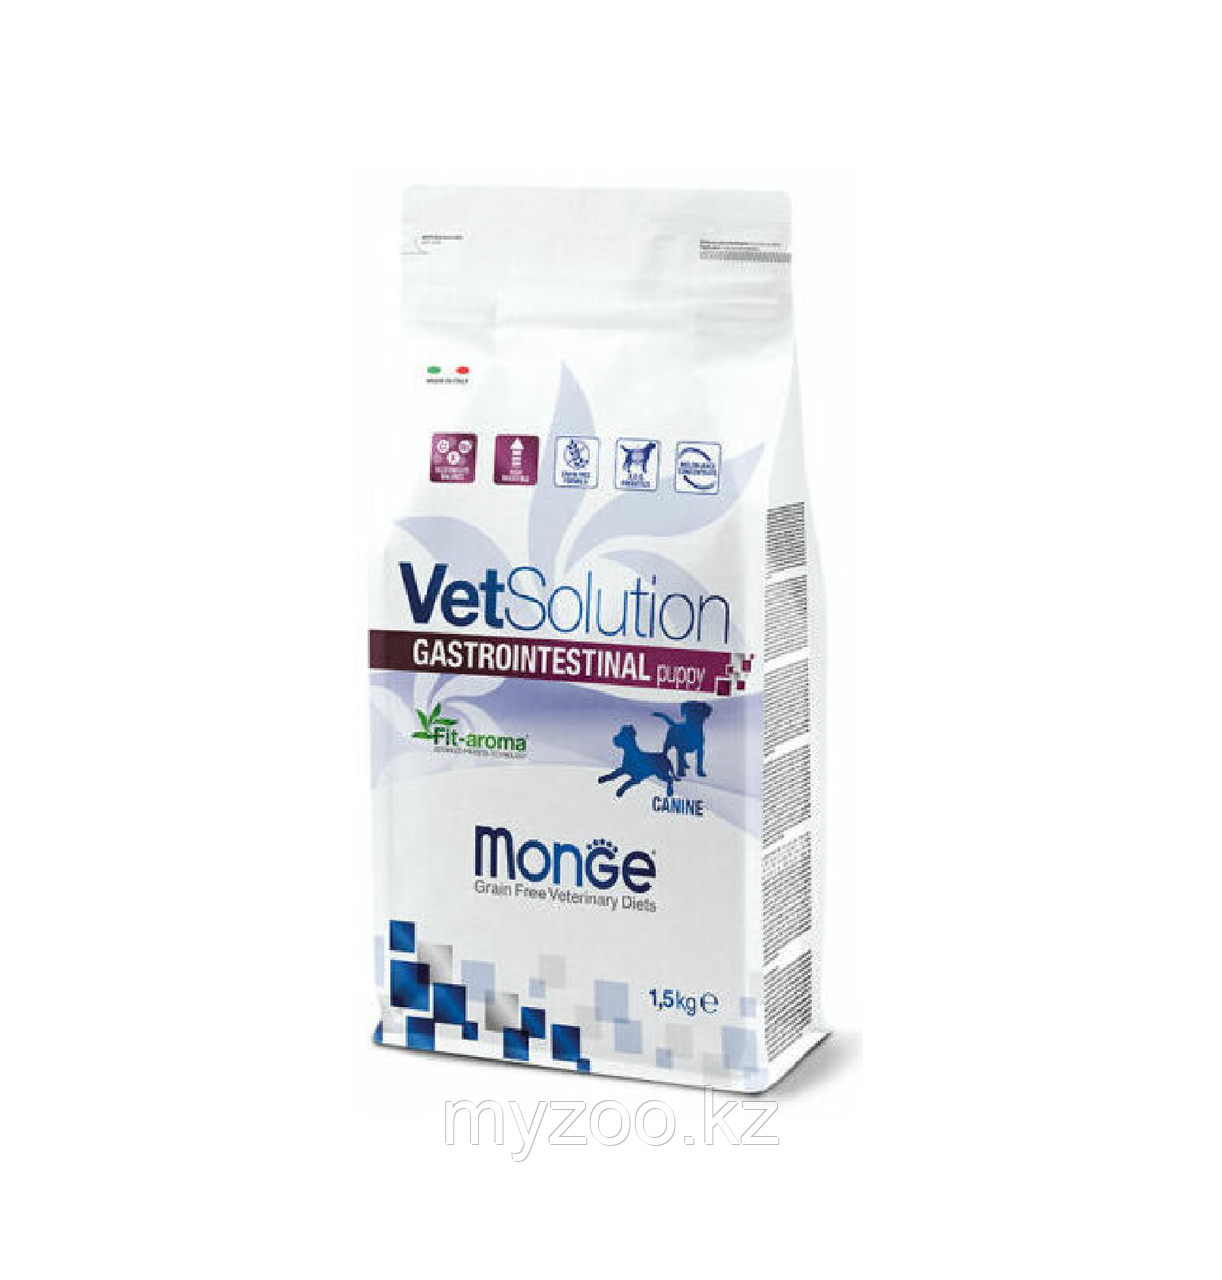 Monge Vetsolution GASTROINTESTINAL PUPPY диета для щенков при проблемах пищеварения,1.5кг